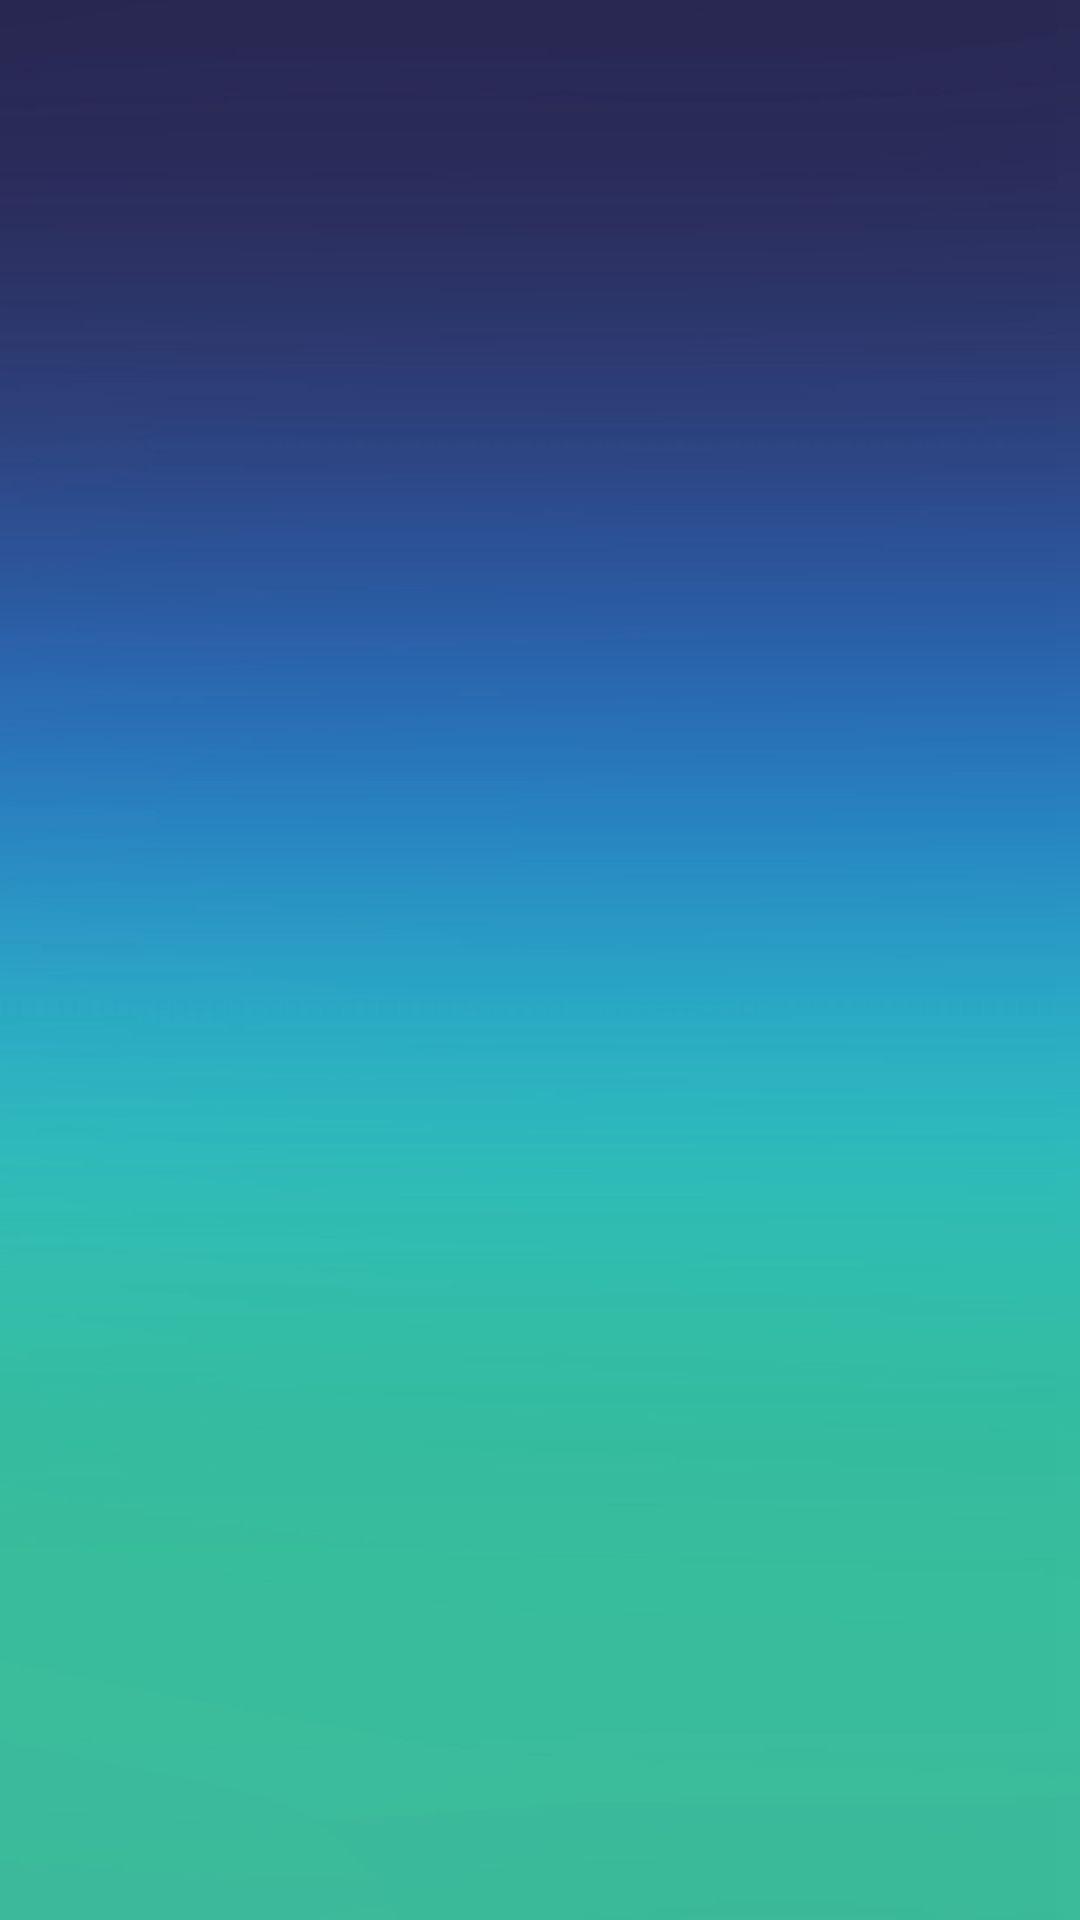 Nintendo Green Blue Gradation Blur iPhone 8 Wallpapers